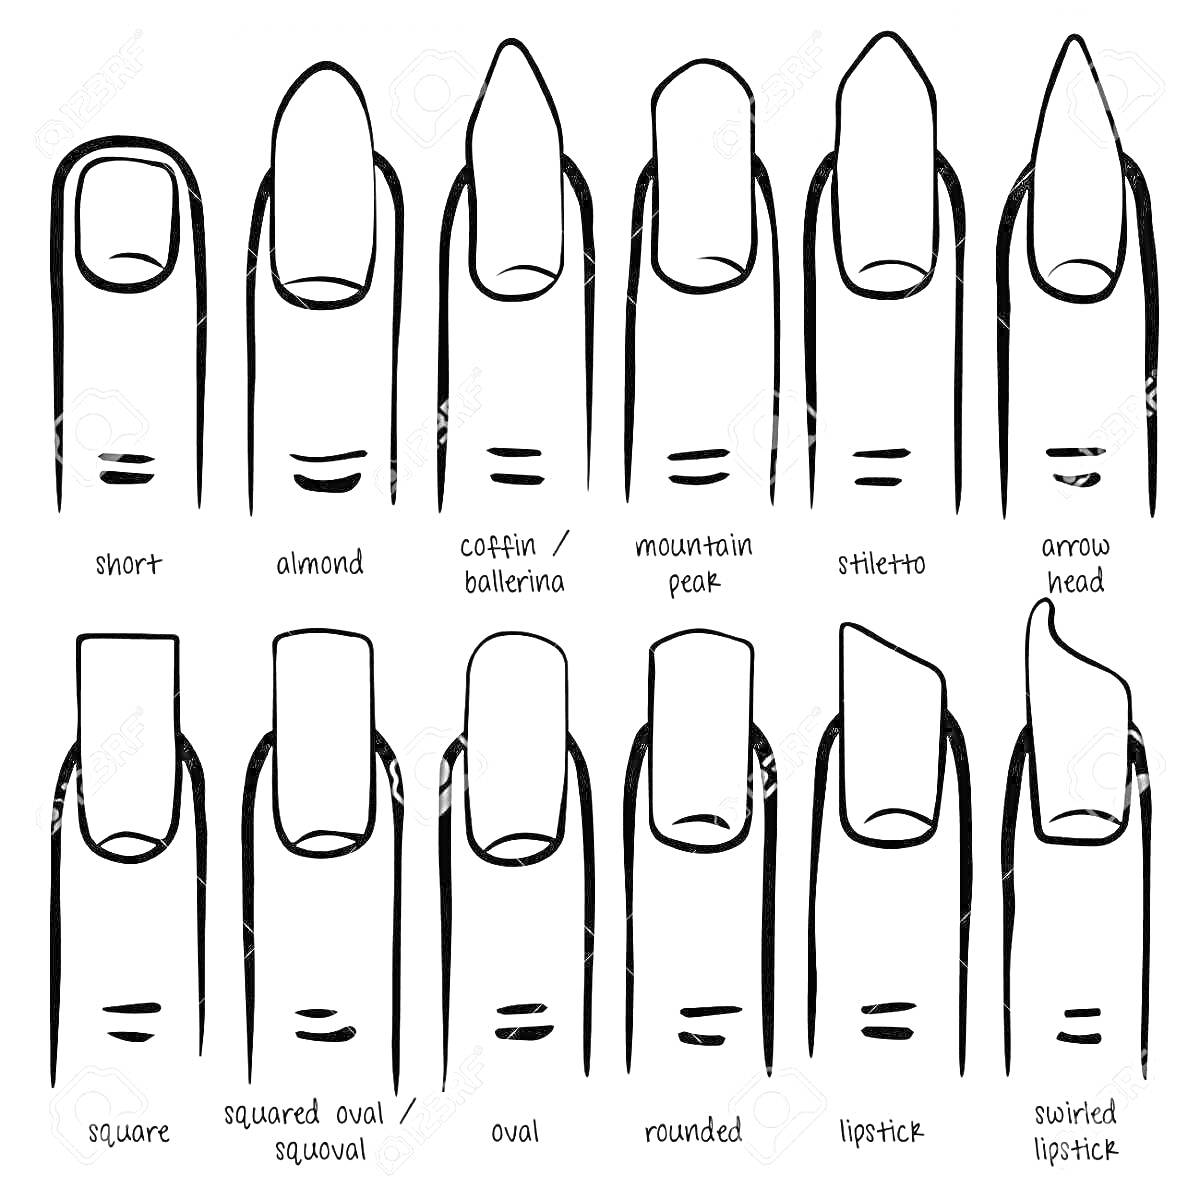 Схема разных форм ногтей: короткие, миндалевидные, гроб/балерина, гора, стилет, стрелка, квадратные, квадрат овал/квадратный овал, овальные, круглые, помада, помада с завитком